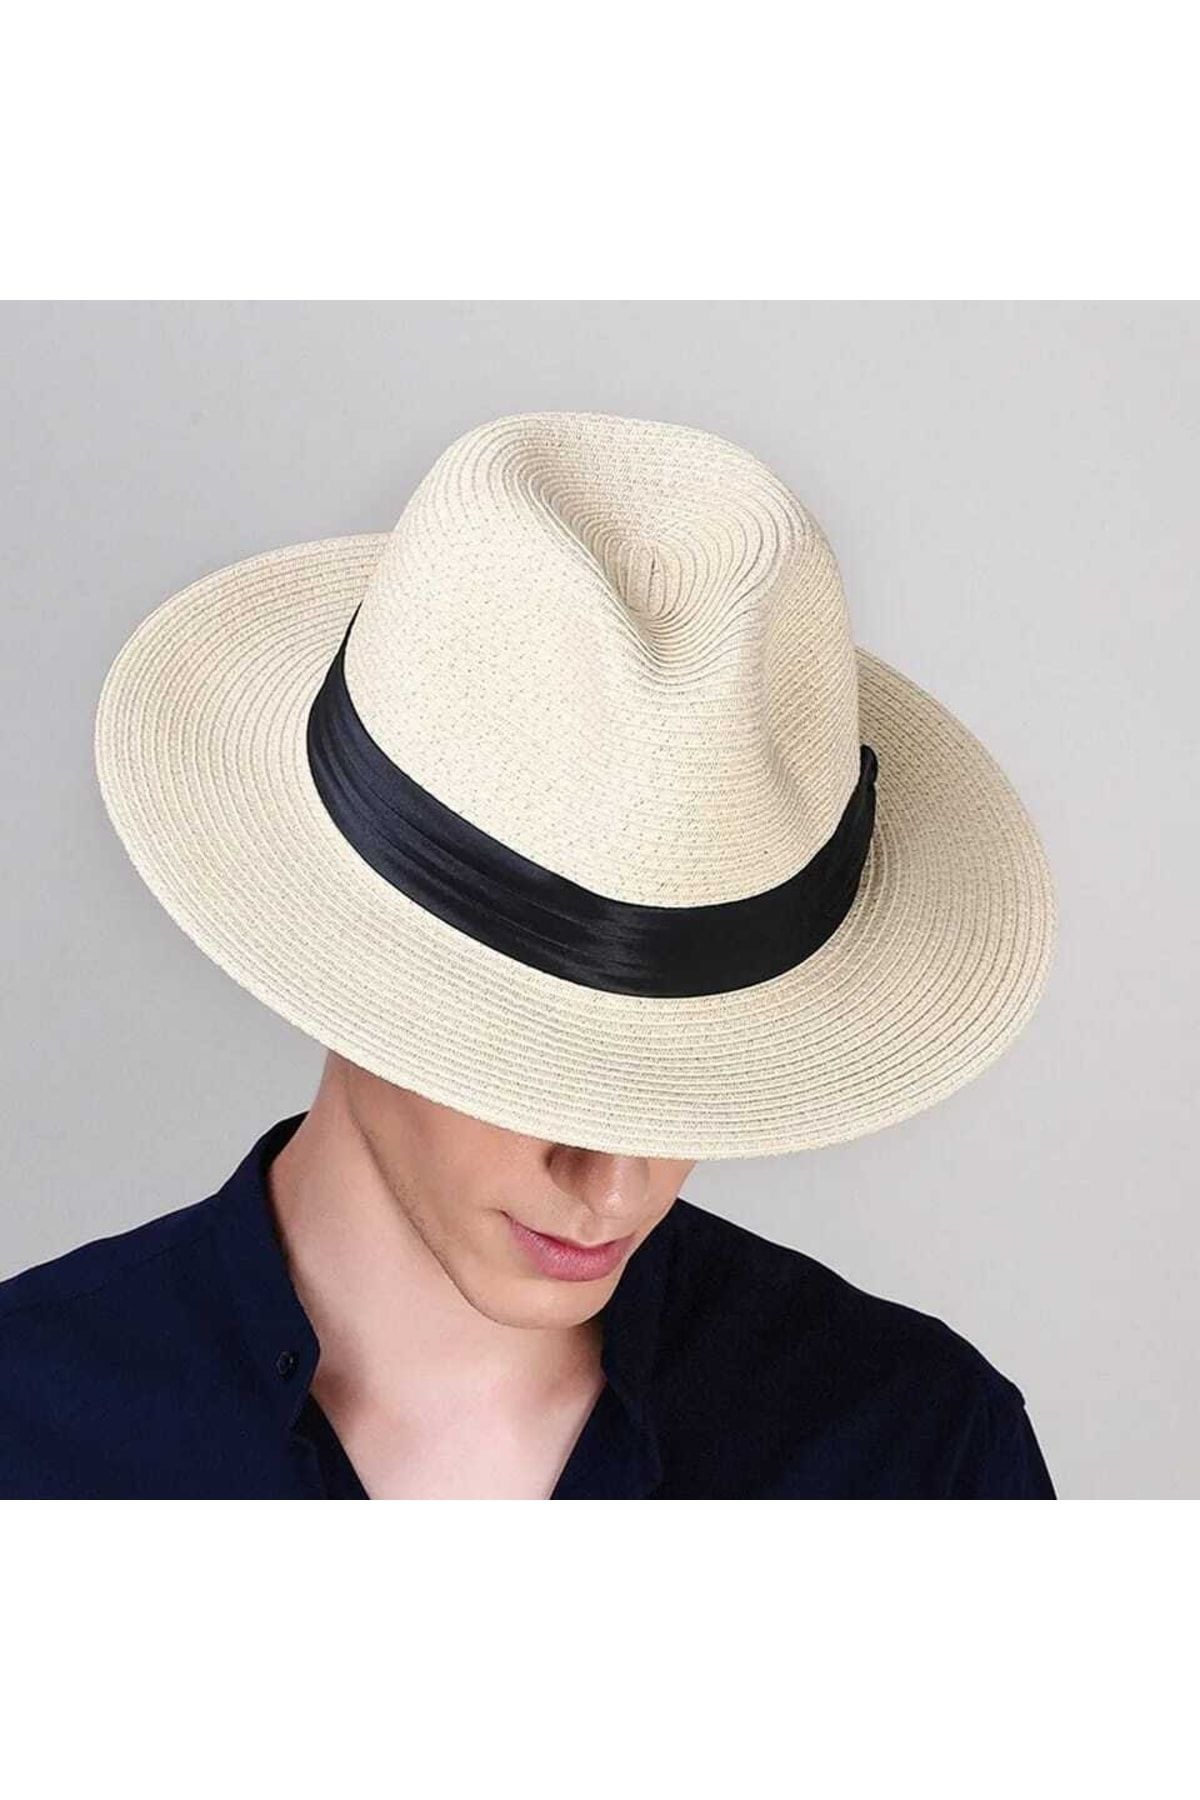 Муж шляпа. Шляпа Stetson мужская. Шляпа Федора мужская широкополая. Fedora шляпа мужская широкополая. Соломенная шляпа Стетсон Панама.